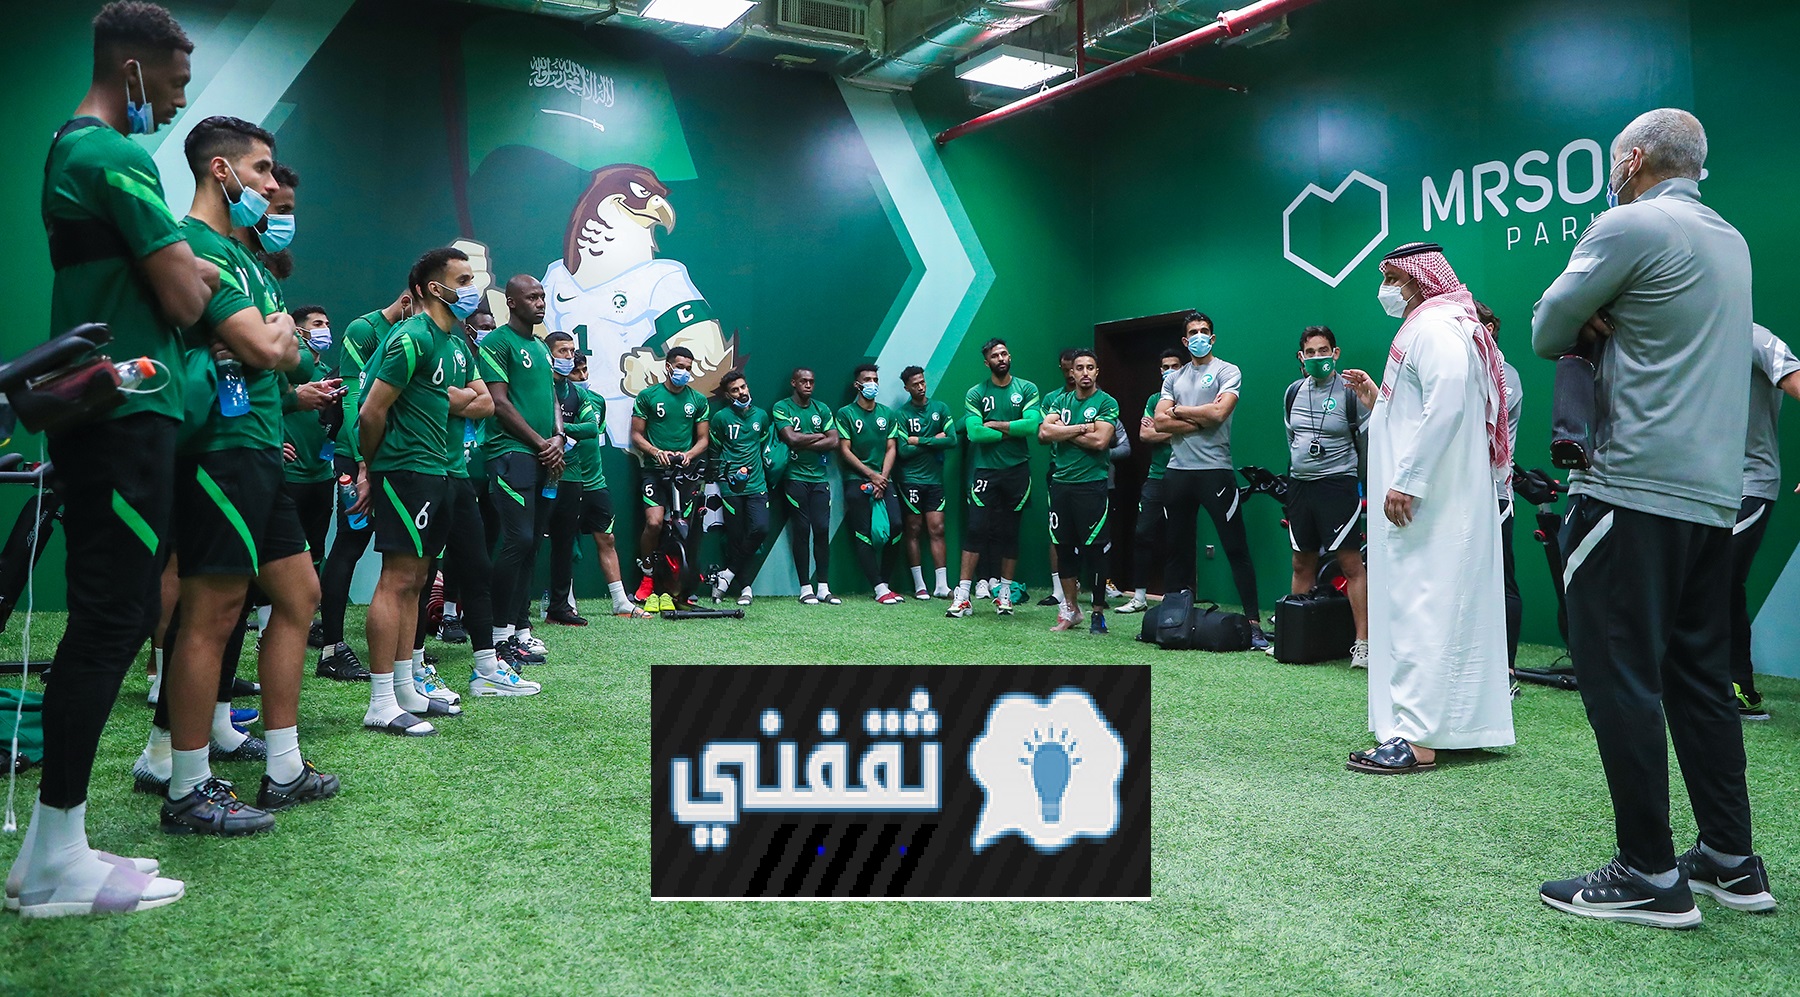 مباراة "استهداف صدارة" بالتصفيات المزدوجة للمنتخب السعودي VS المنتخب الفلسطيني